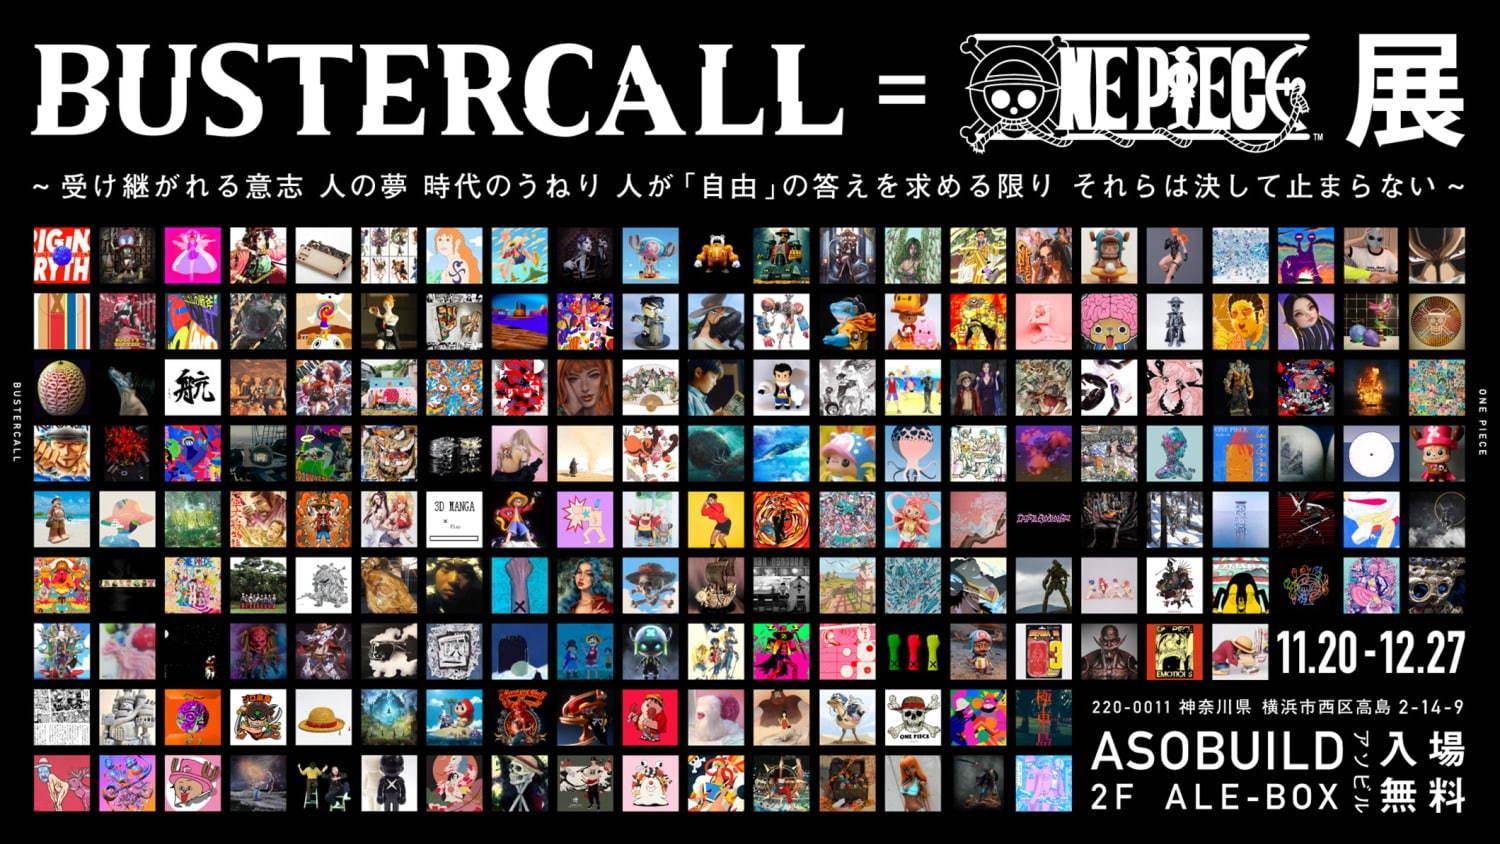 ワンピース 題材のアート展 Bustercall One Piece展 横浜 アソビルで開催 ファッションプレス